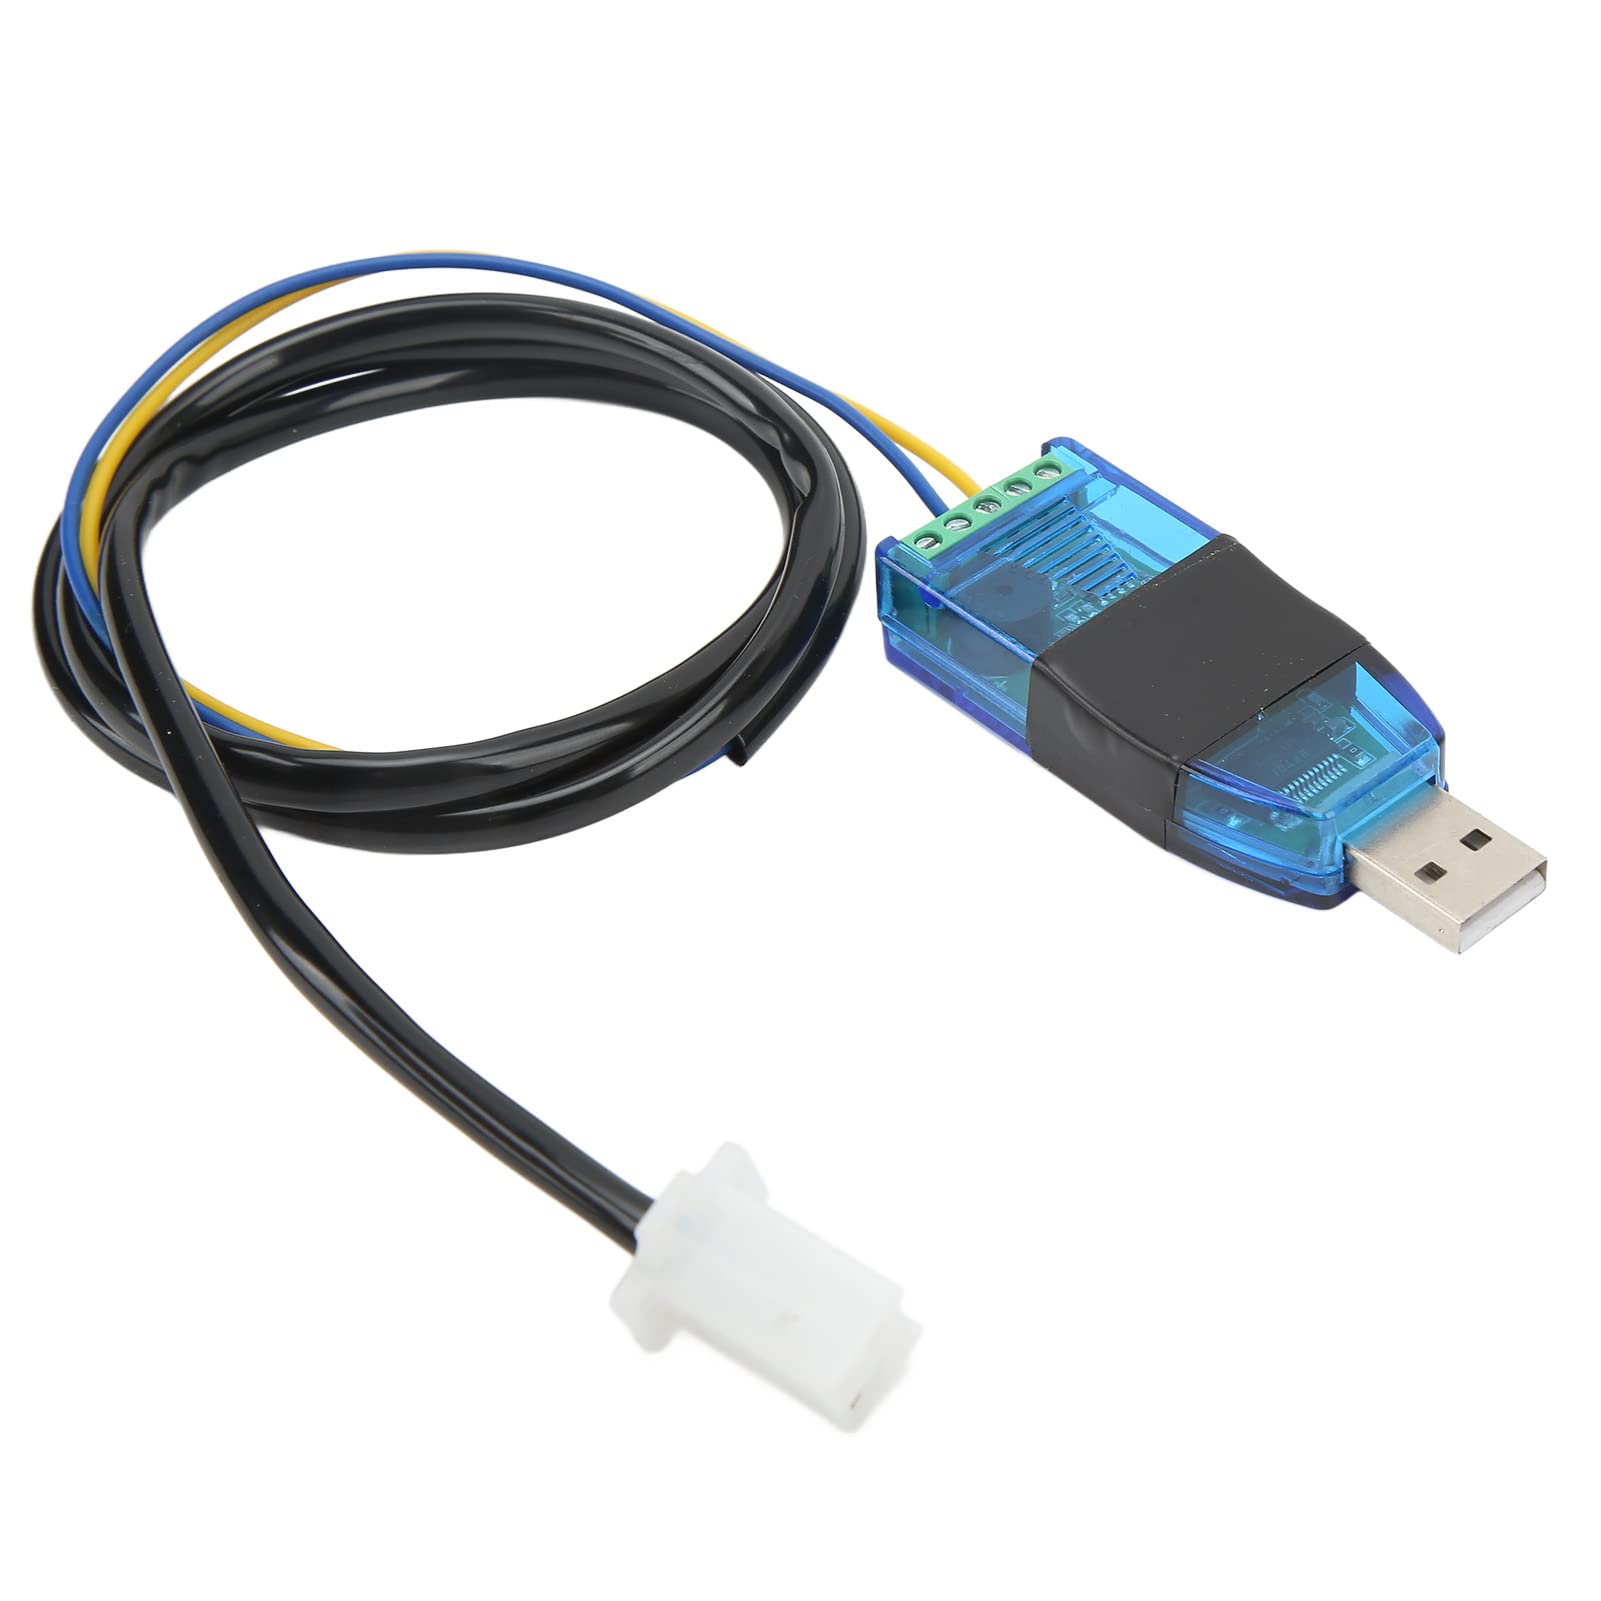 Programmkabel USB, Elektrofahrrad Programmierbares USB Datenkabel Baudrate 115200 für VOTOL Controller EM 150/2 200/2 260/2 von aqxreight